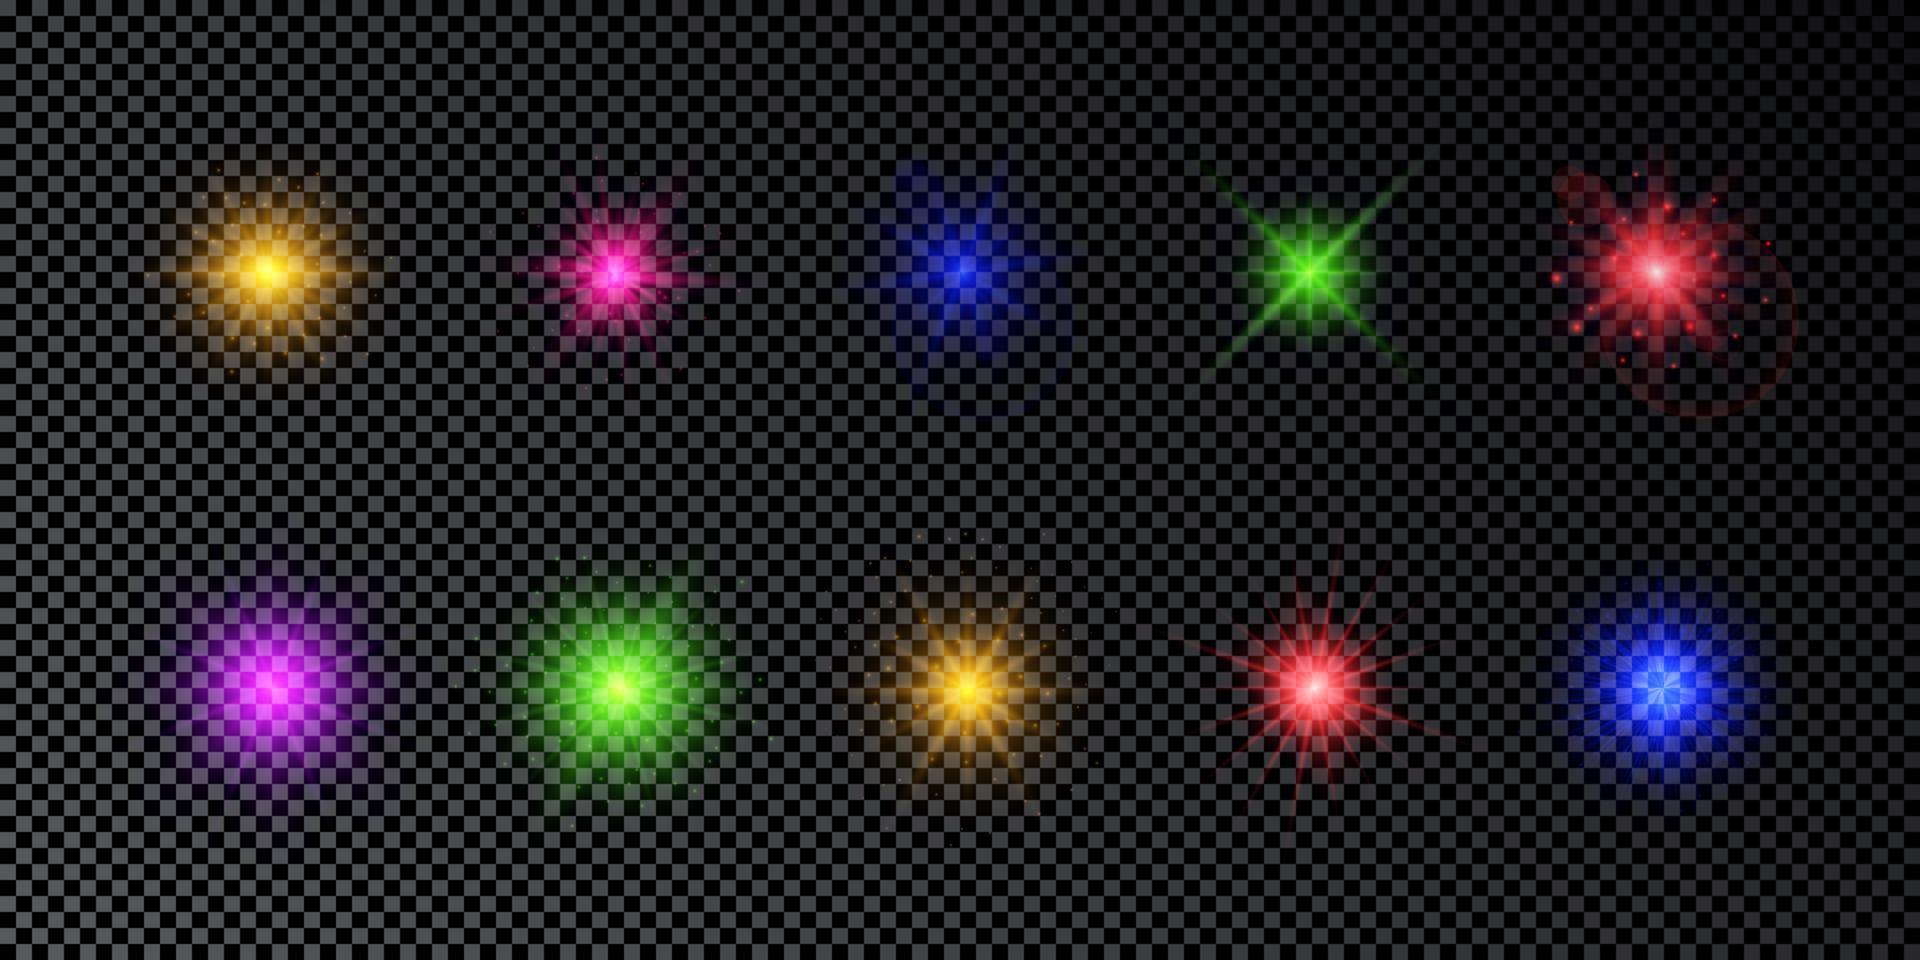 efecto de luz de destellos de lente. conjunto de efectos de explosión de luces multicolores brillantes con destellos sobre un fondo transparente oscuro. ilustración vectorial vector